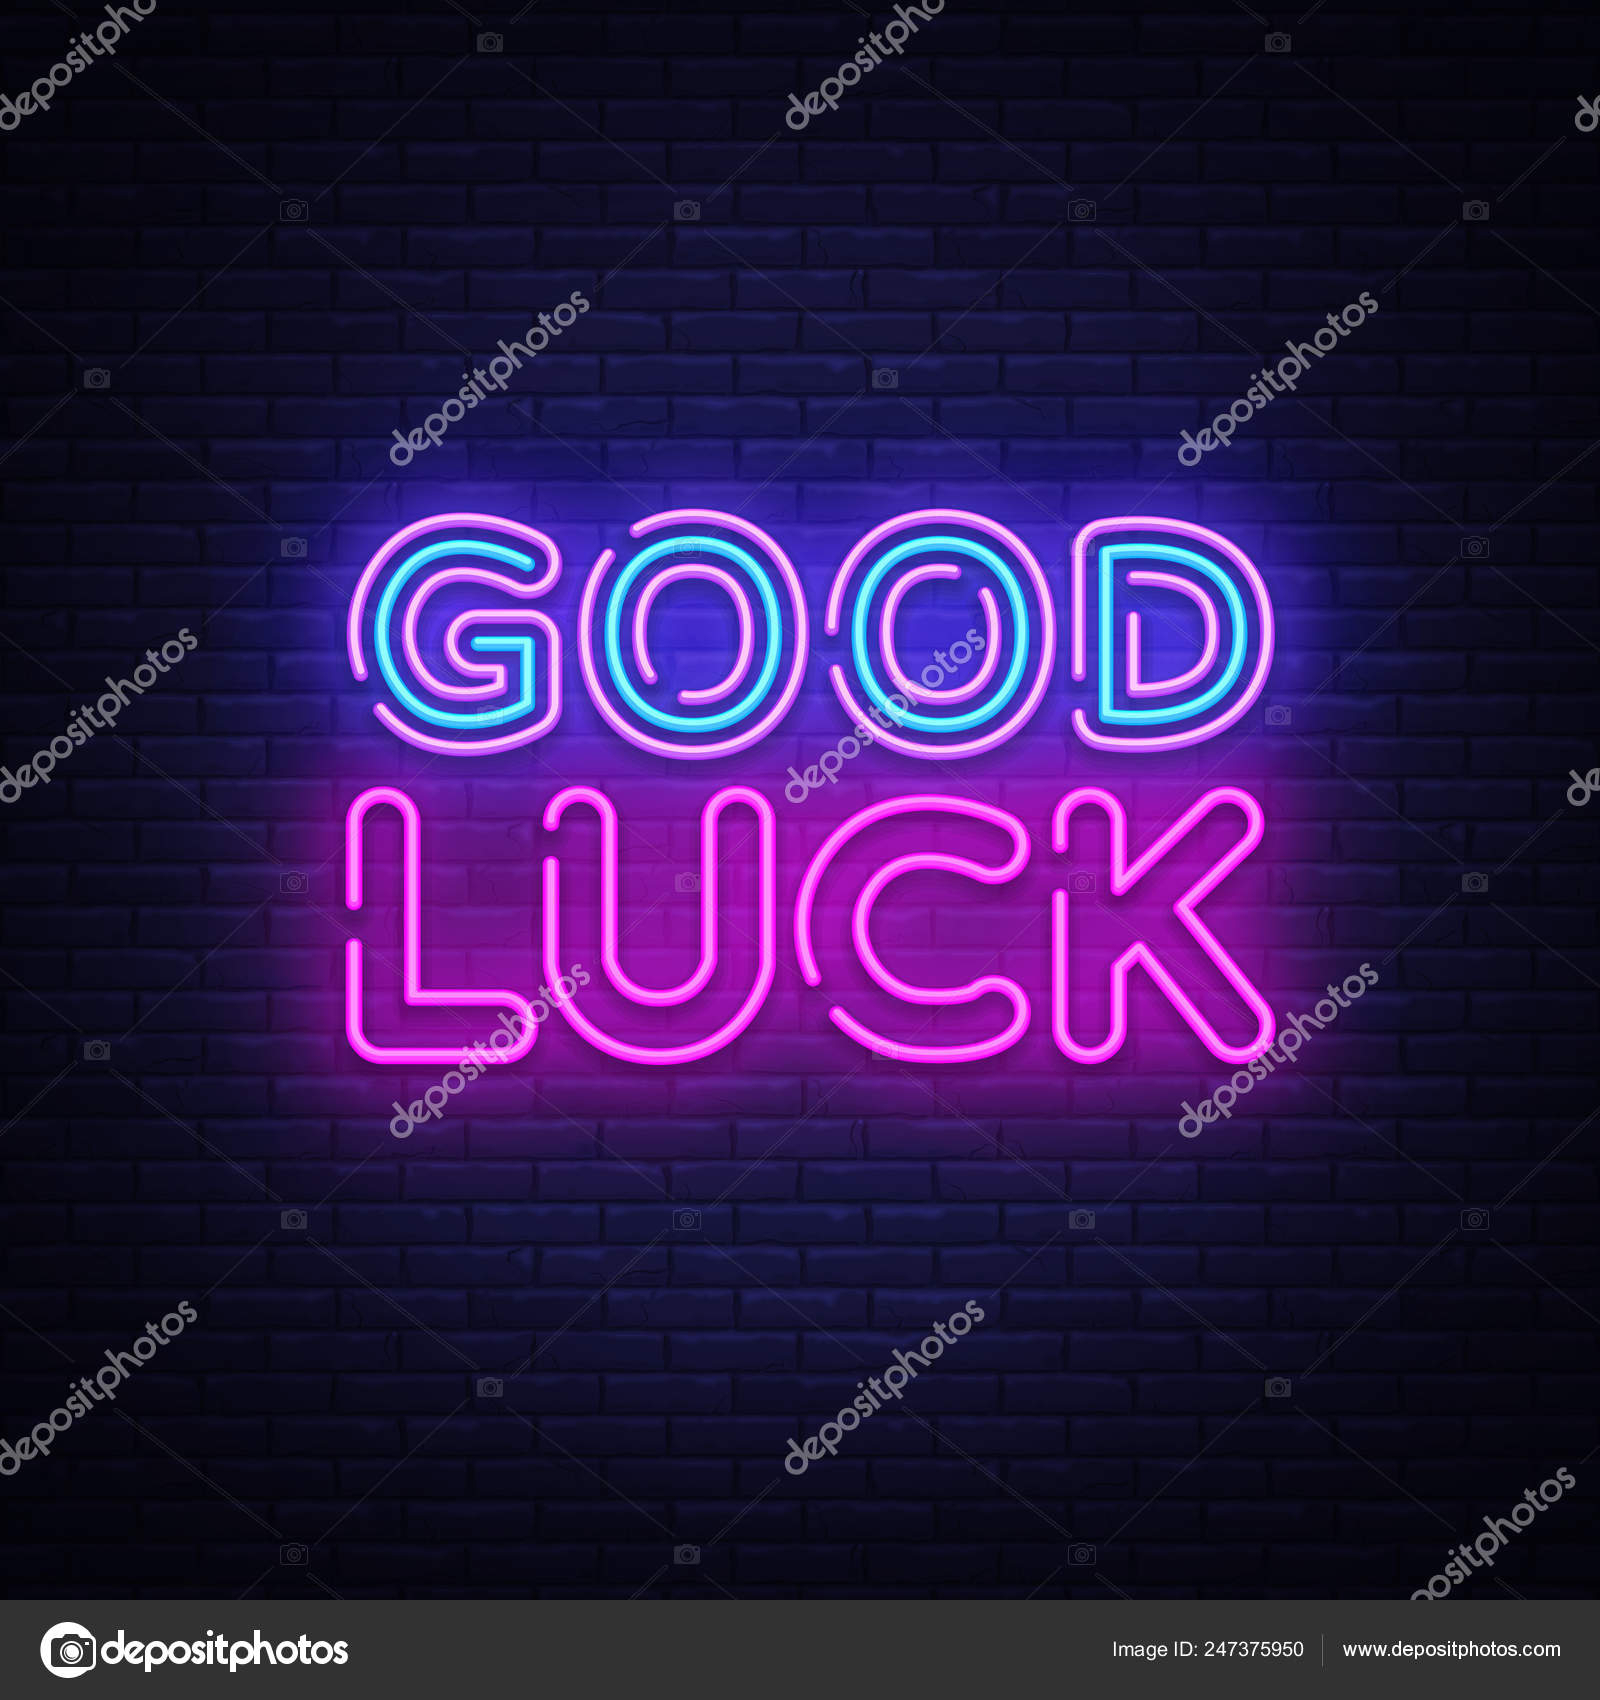 Good Luck Neon Sign Vector. Good Luck Design Template Neon Regarding Good Luck Banner Template